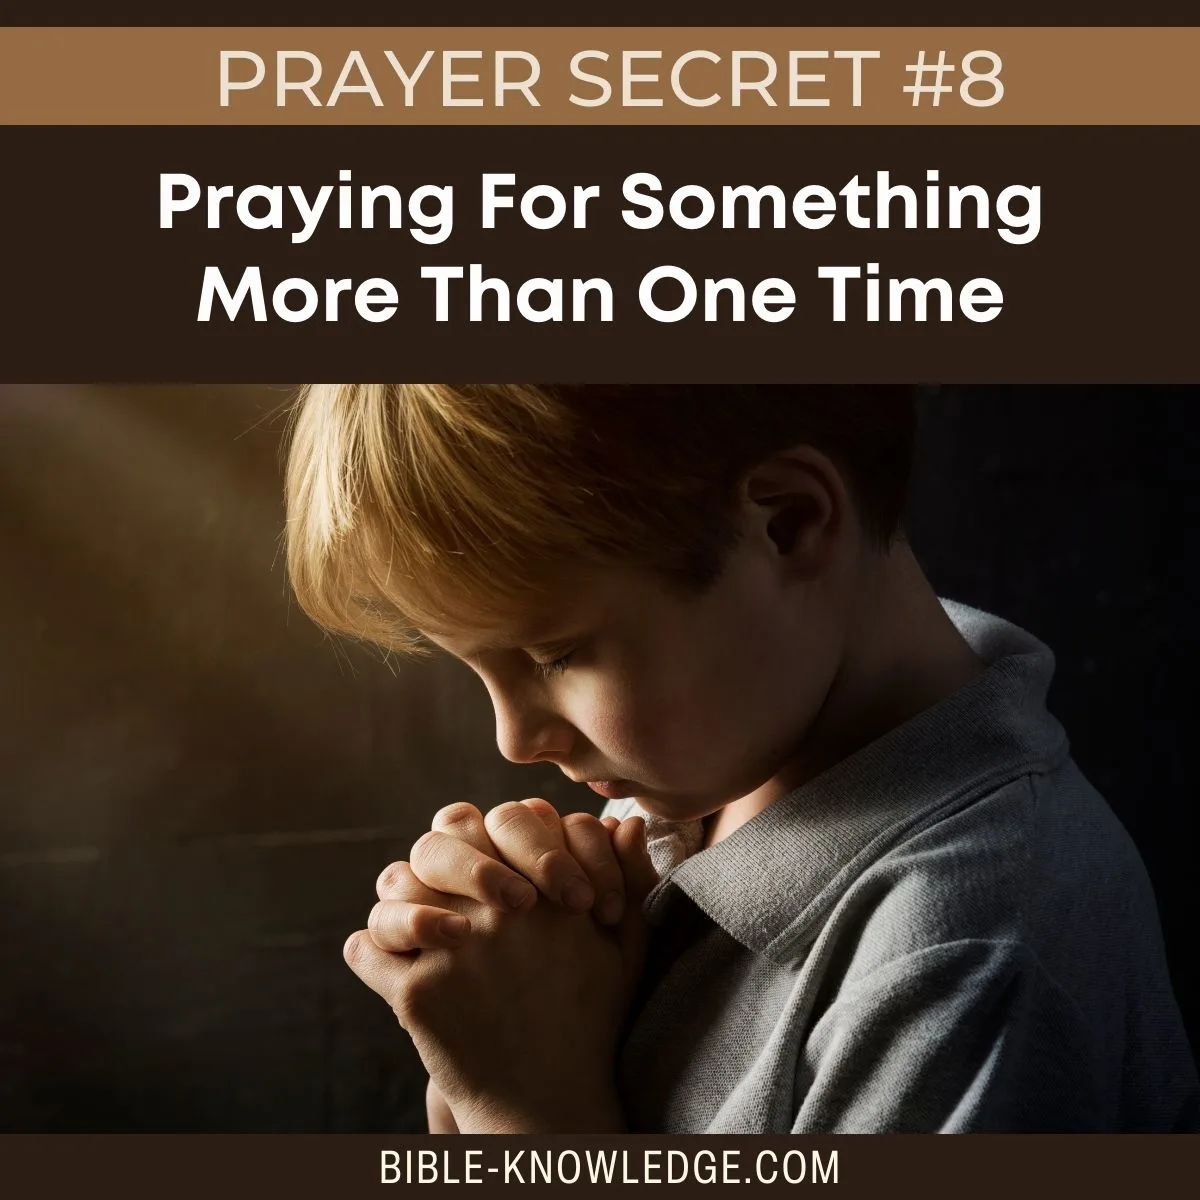 Prayer Secret #8 - Praying For Something More Than One Time